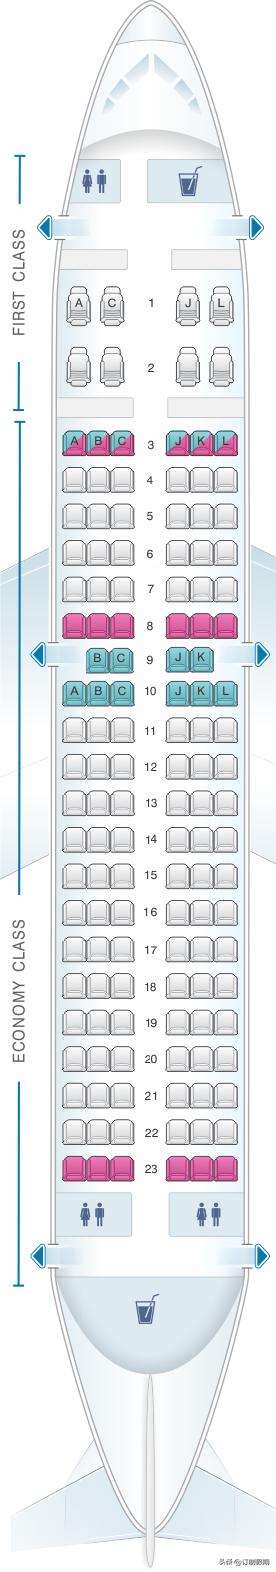 a321飞机座位分布图川航(川航a321飞机座位分布图)